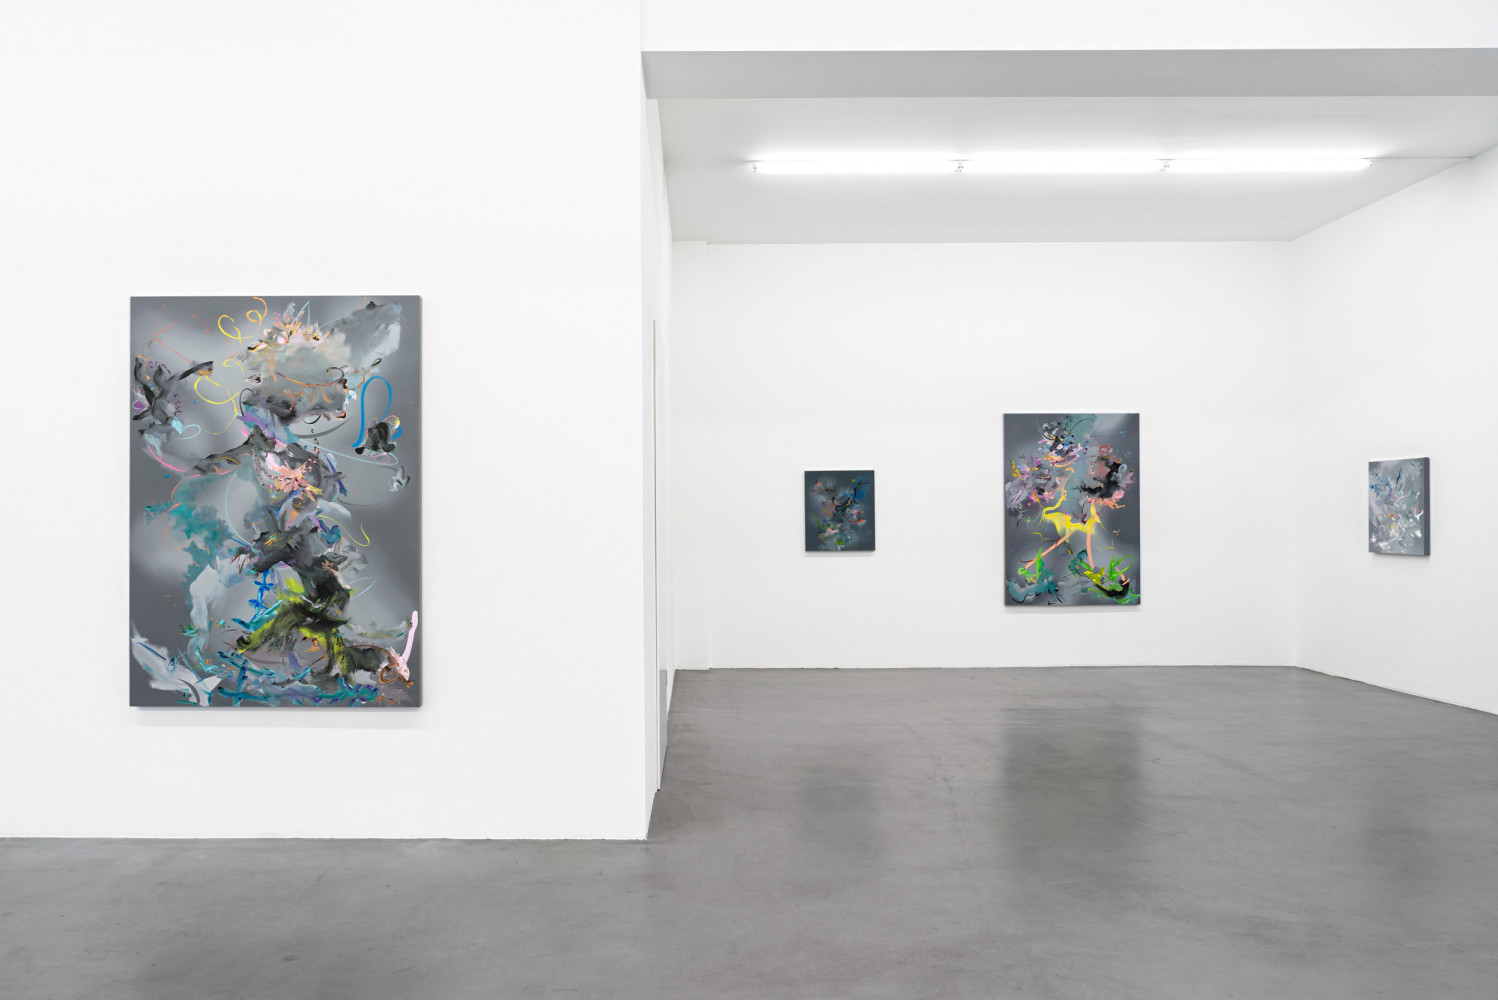 Fiona Rae, Installationsansicht, Buchmann Galerie, 2016